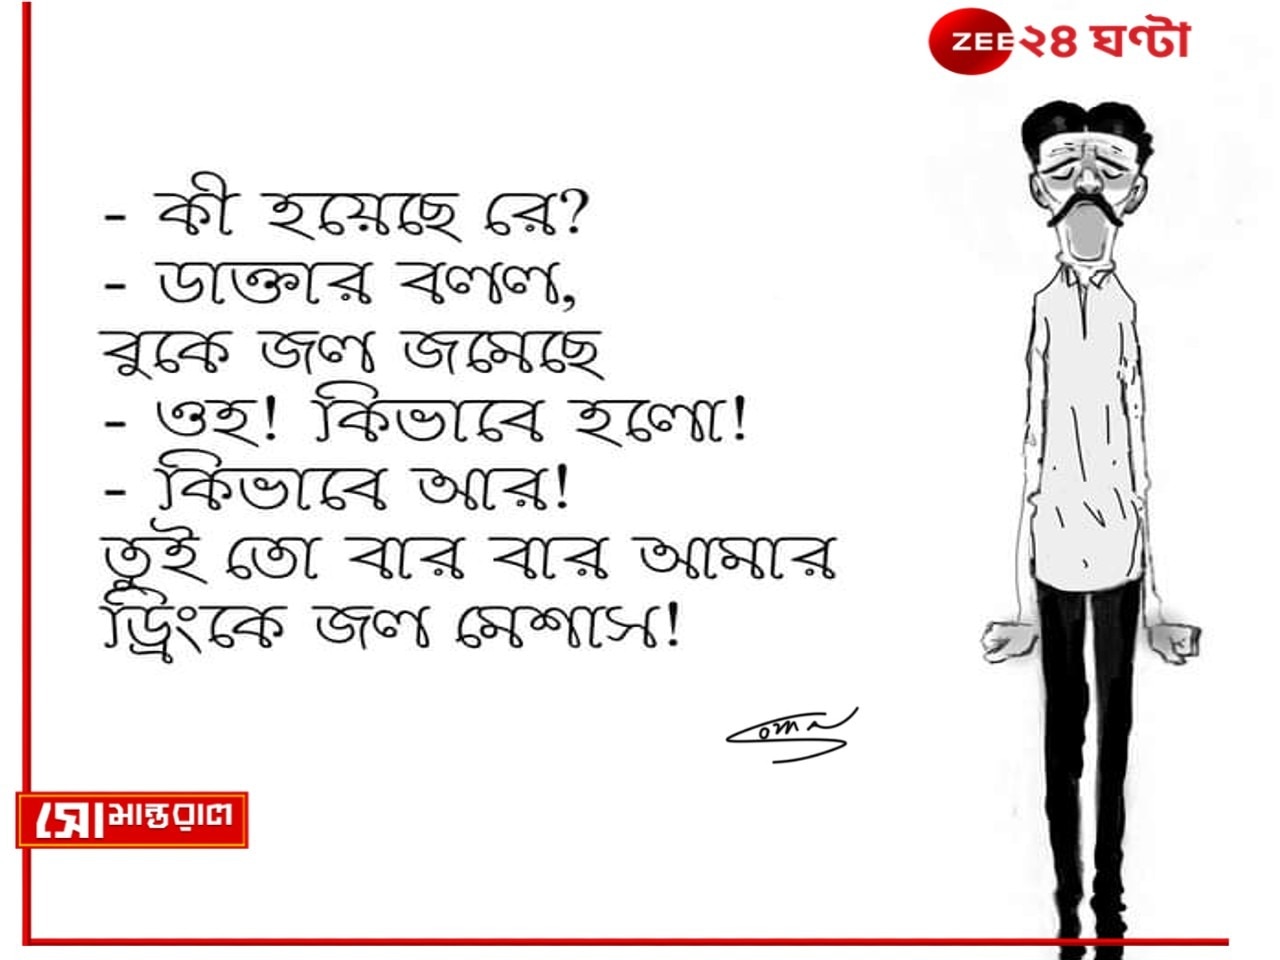 Daily Cartoon | সোমান্তরাল | জলন্ত সমস্যা!